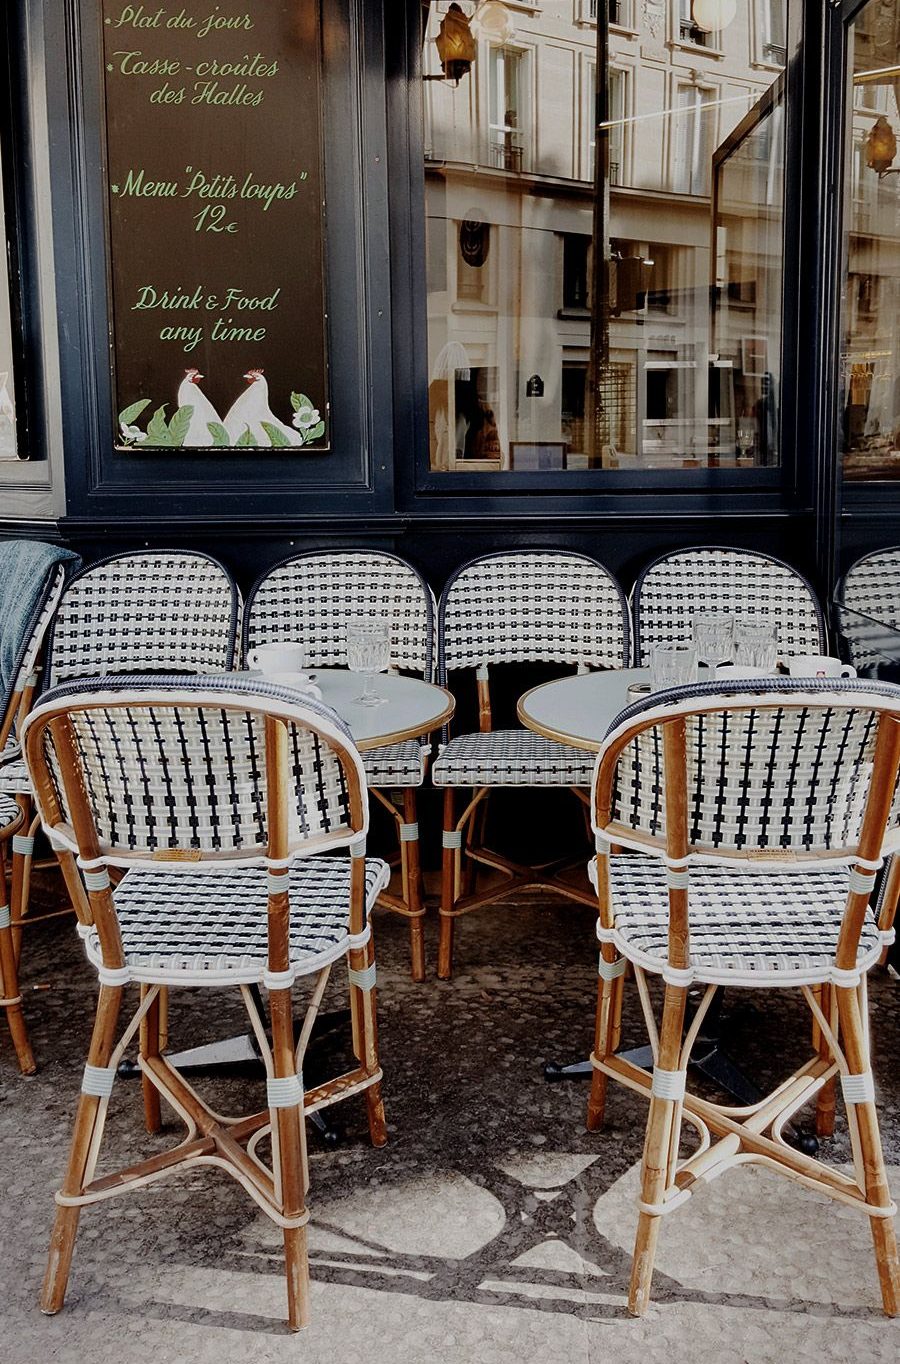 Cafetería terraza parisina